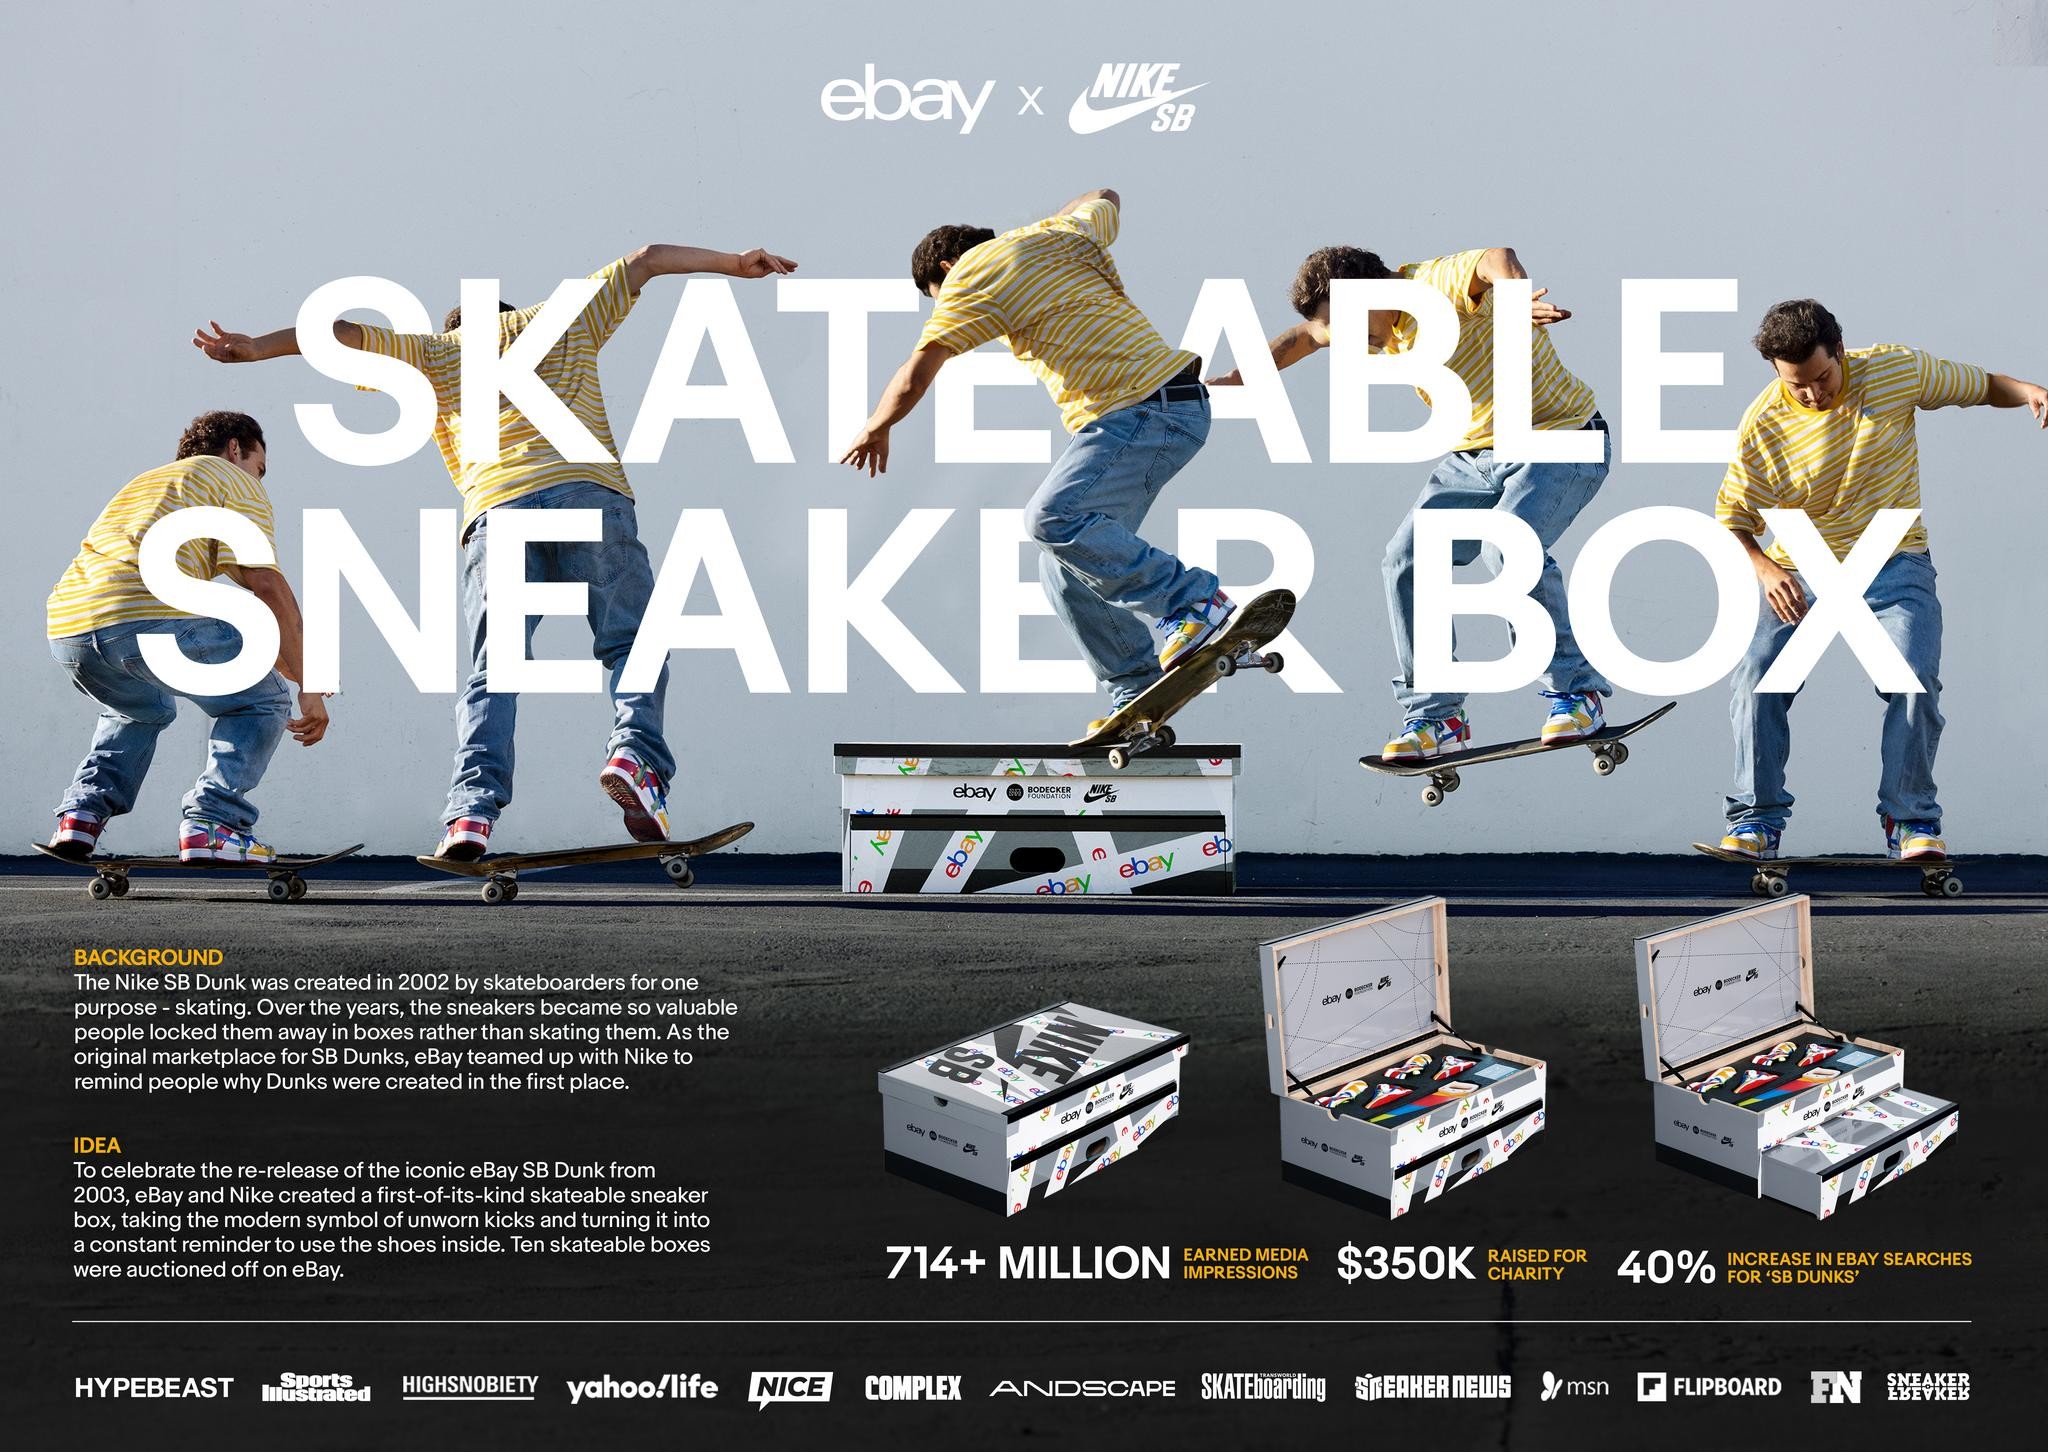 eBay x Nike SB Skateable Box